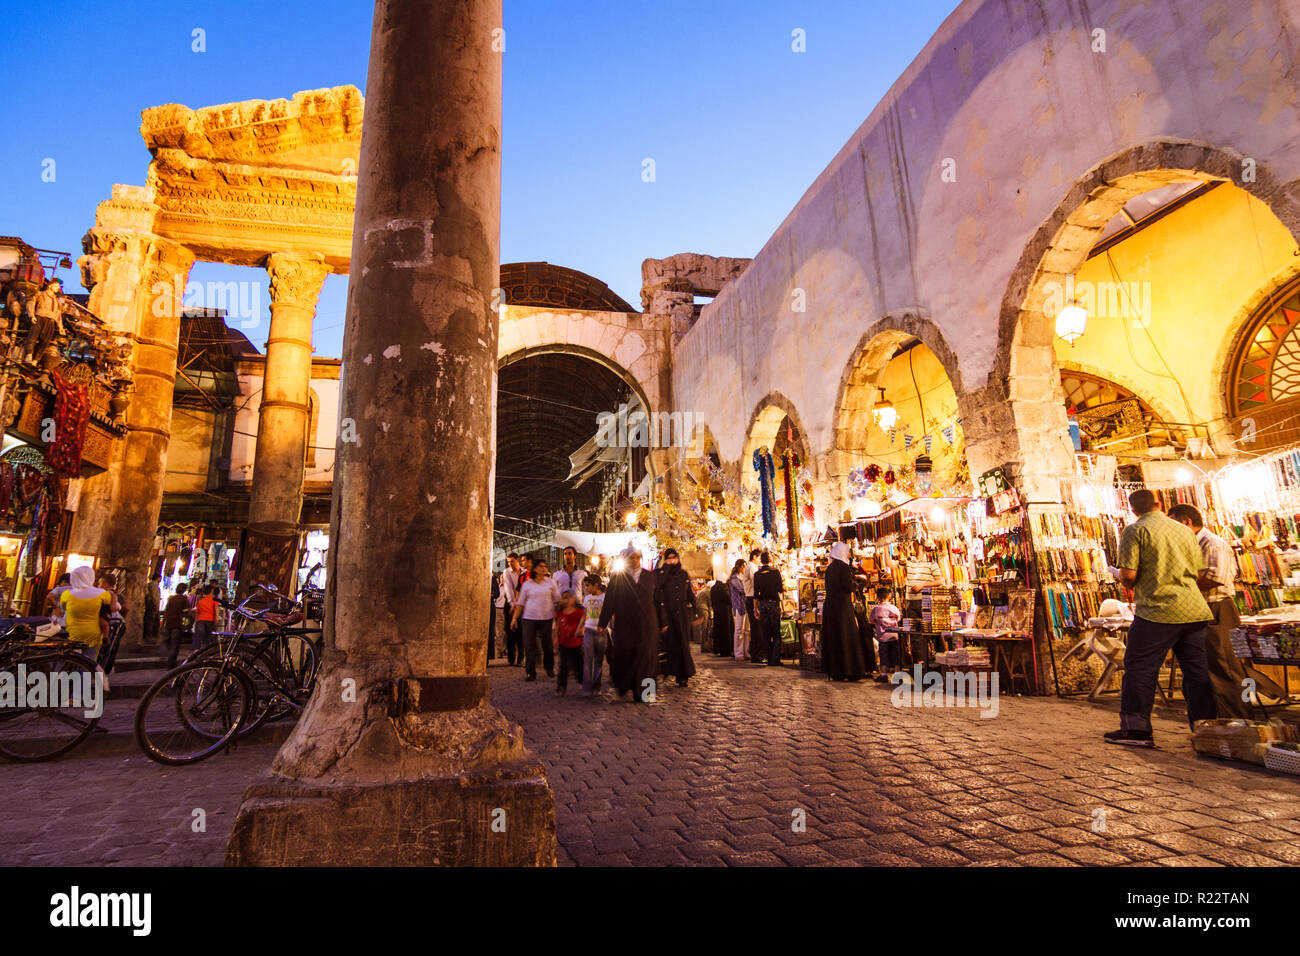 Damasco, Siria : passanti presso i ruderi del romano Tempio di Giove (I secolo A.C. al iv secolo ce) all'ingresso di Al-Hamidiyah Souq. Foto Stock